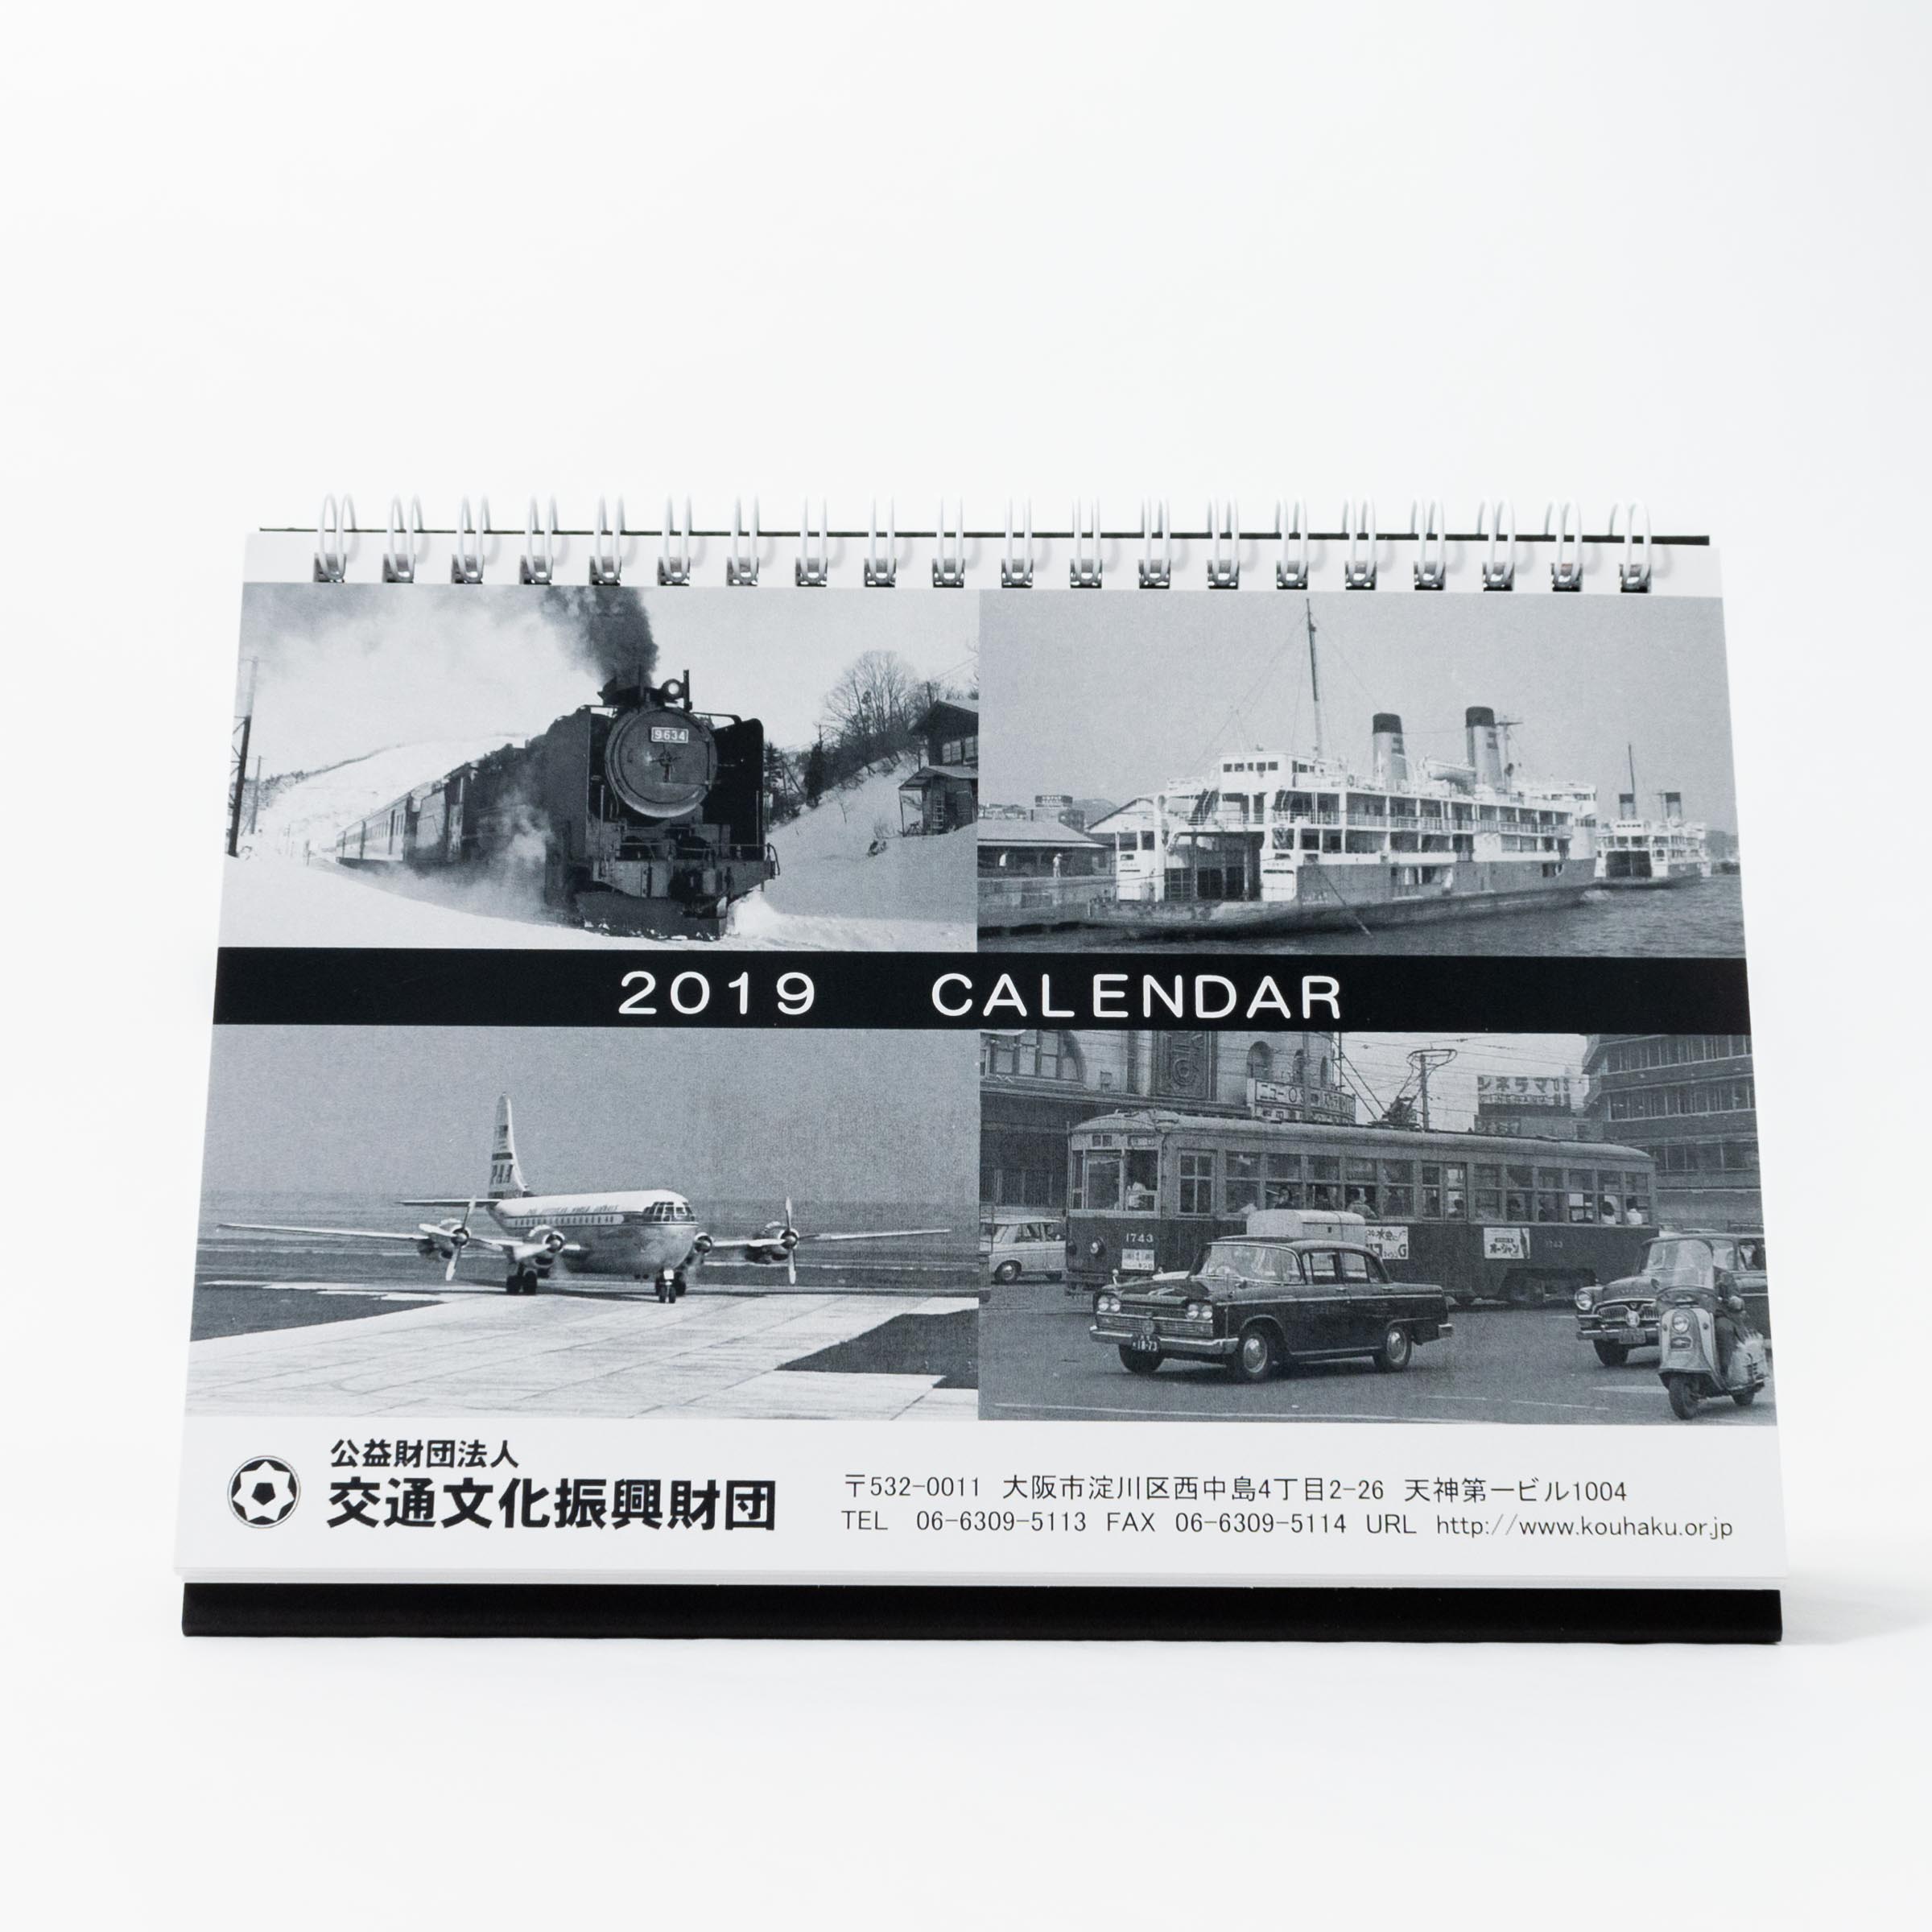 「公益財団法人交通文化振興財団事務局 様」製作のオリジナルカレンダー